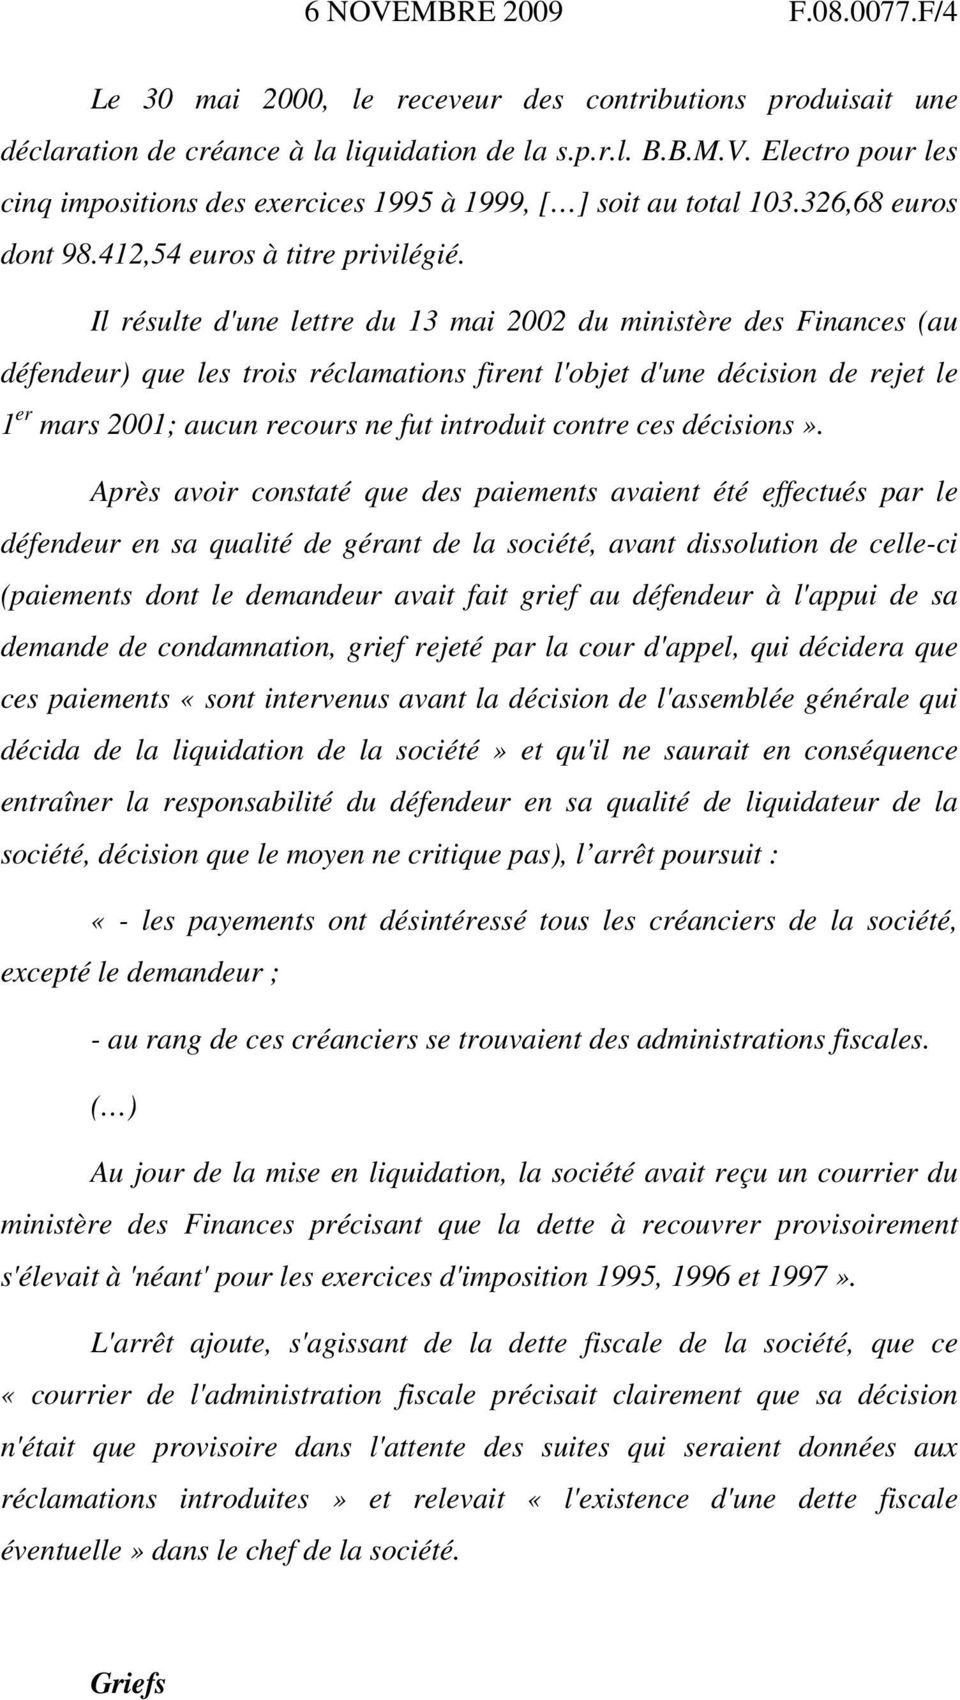 Il résulte d'une lettre du 13 mai 2002 du ministère des Finances (au défendeur) que les trois réclamations firent l'objet d'une décision de rejet le 1 er mars 2001; aucun recours ne fut introduit